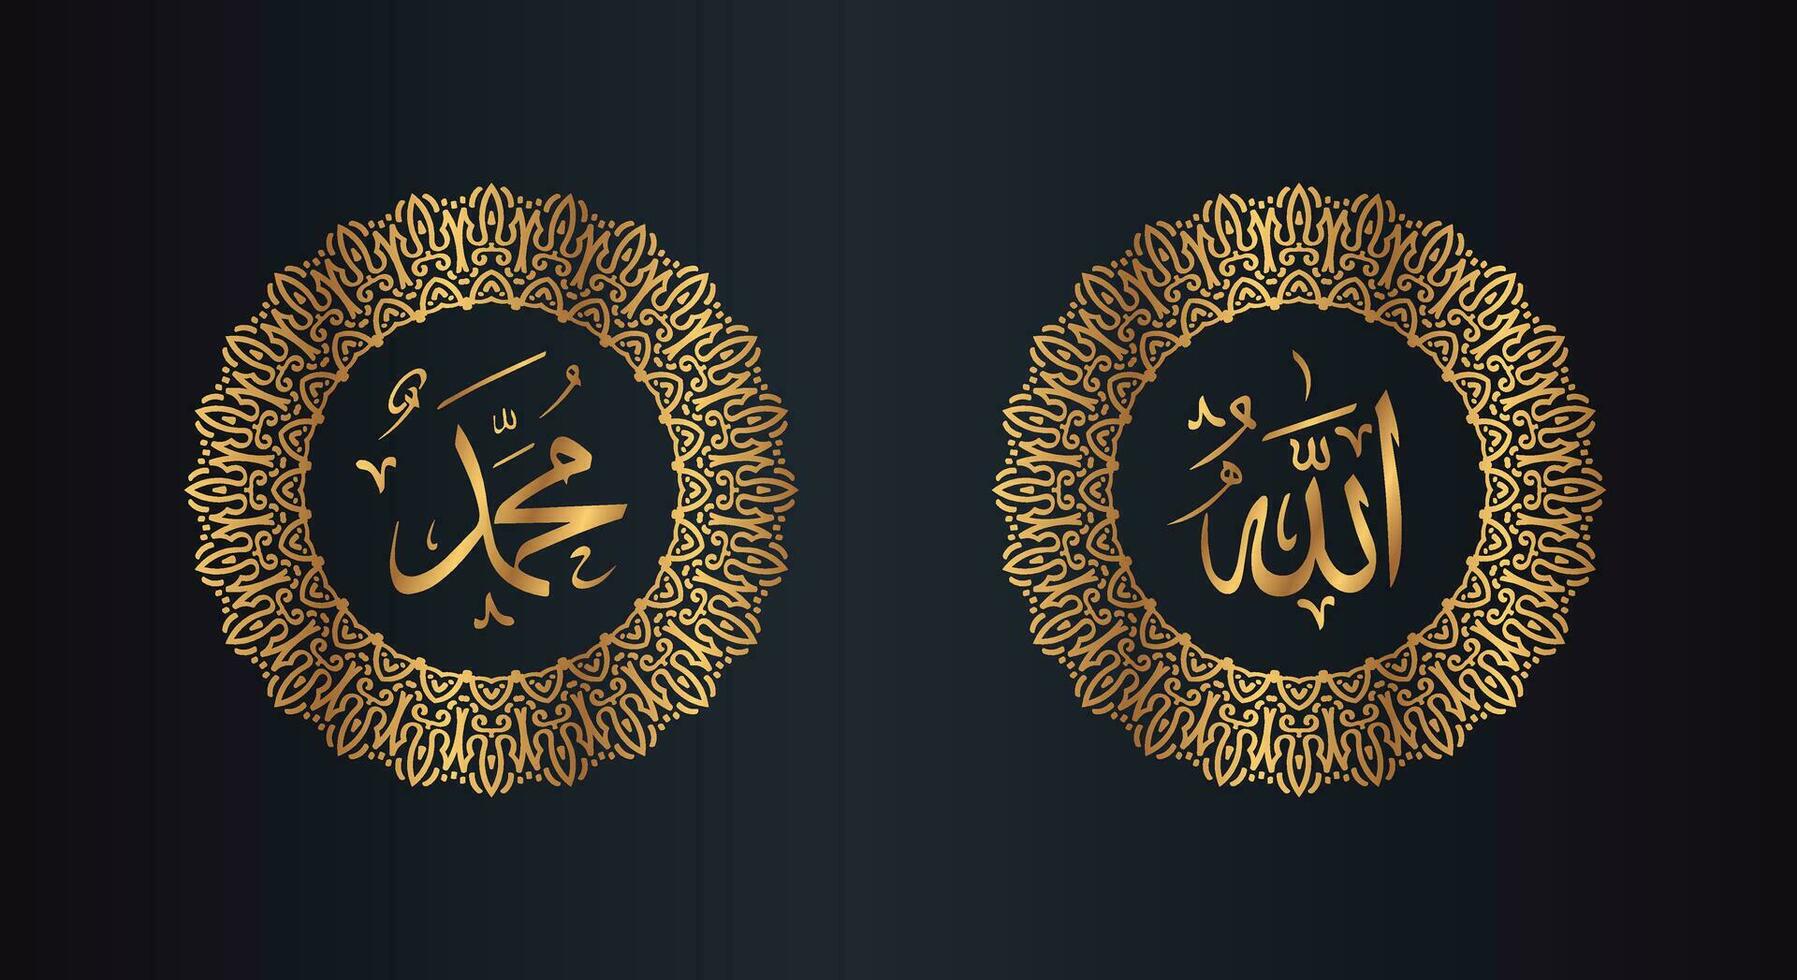 allah muhammad arabicum kalligrafi med cirkel ram och gyllene Färg med svart bakgrund vektor